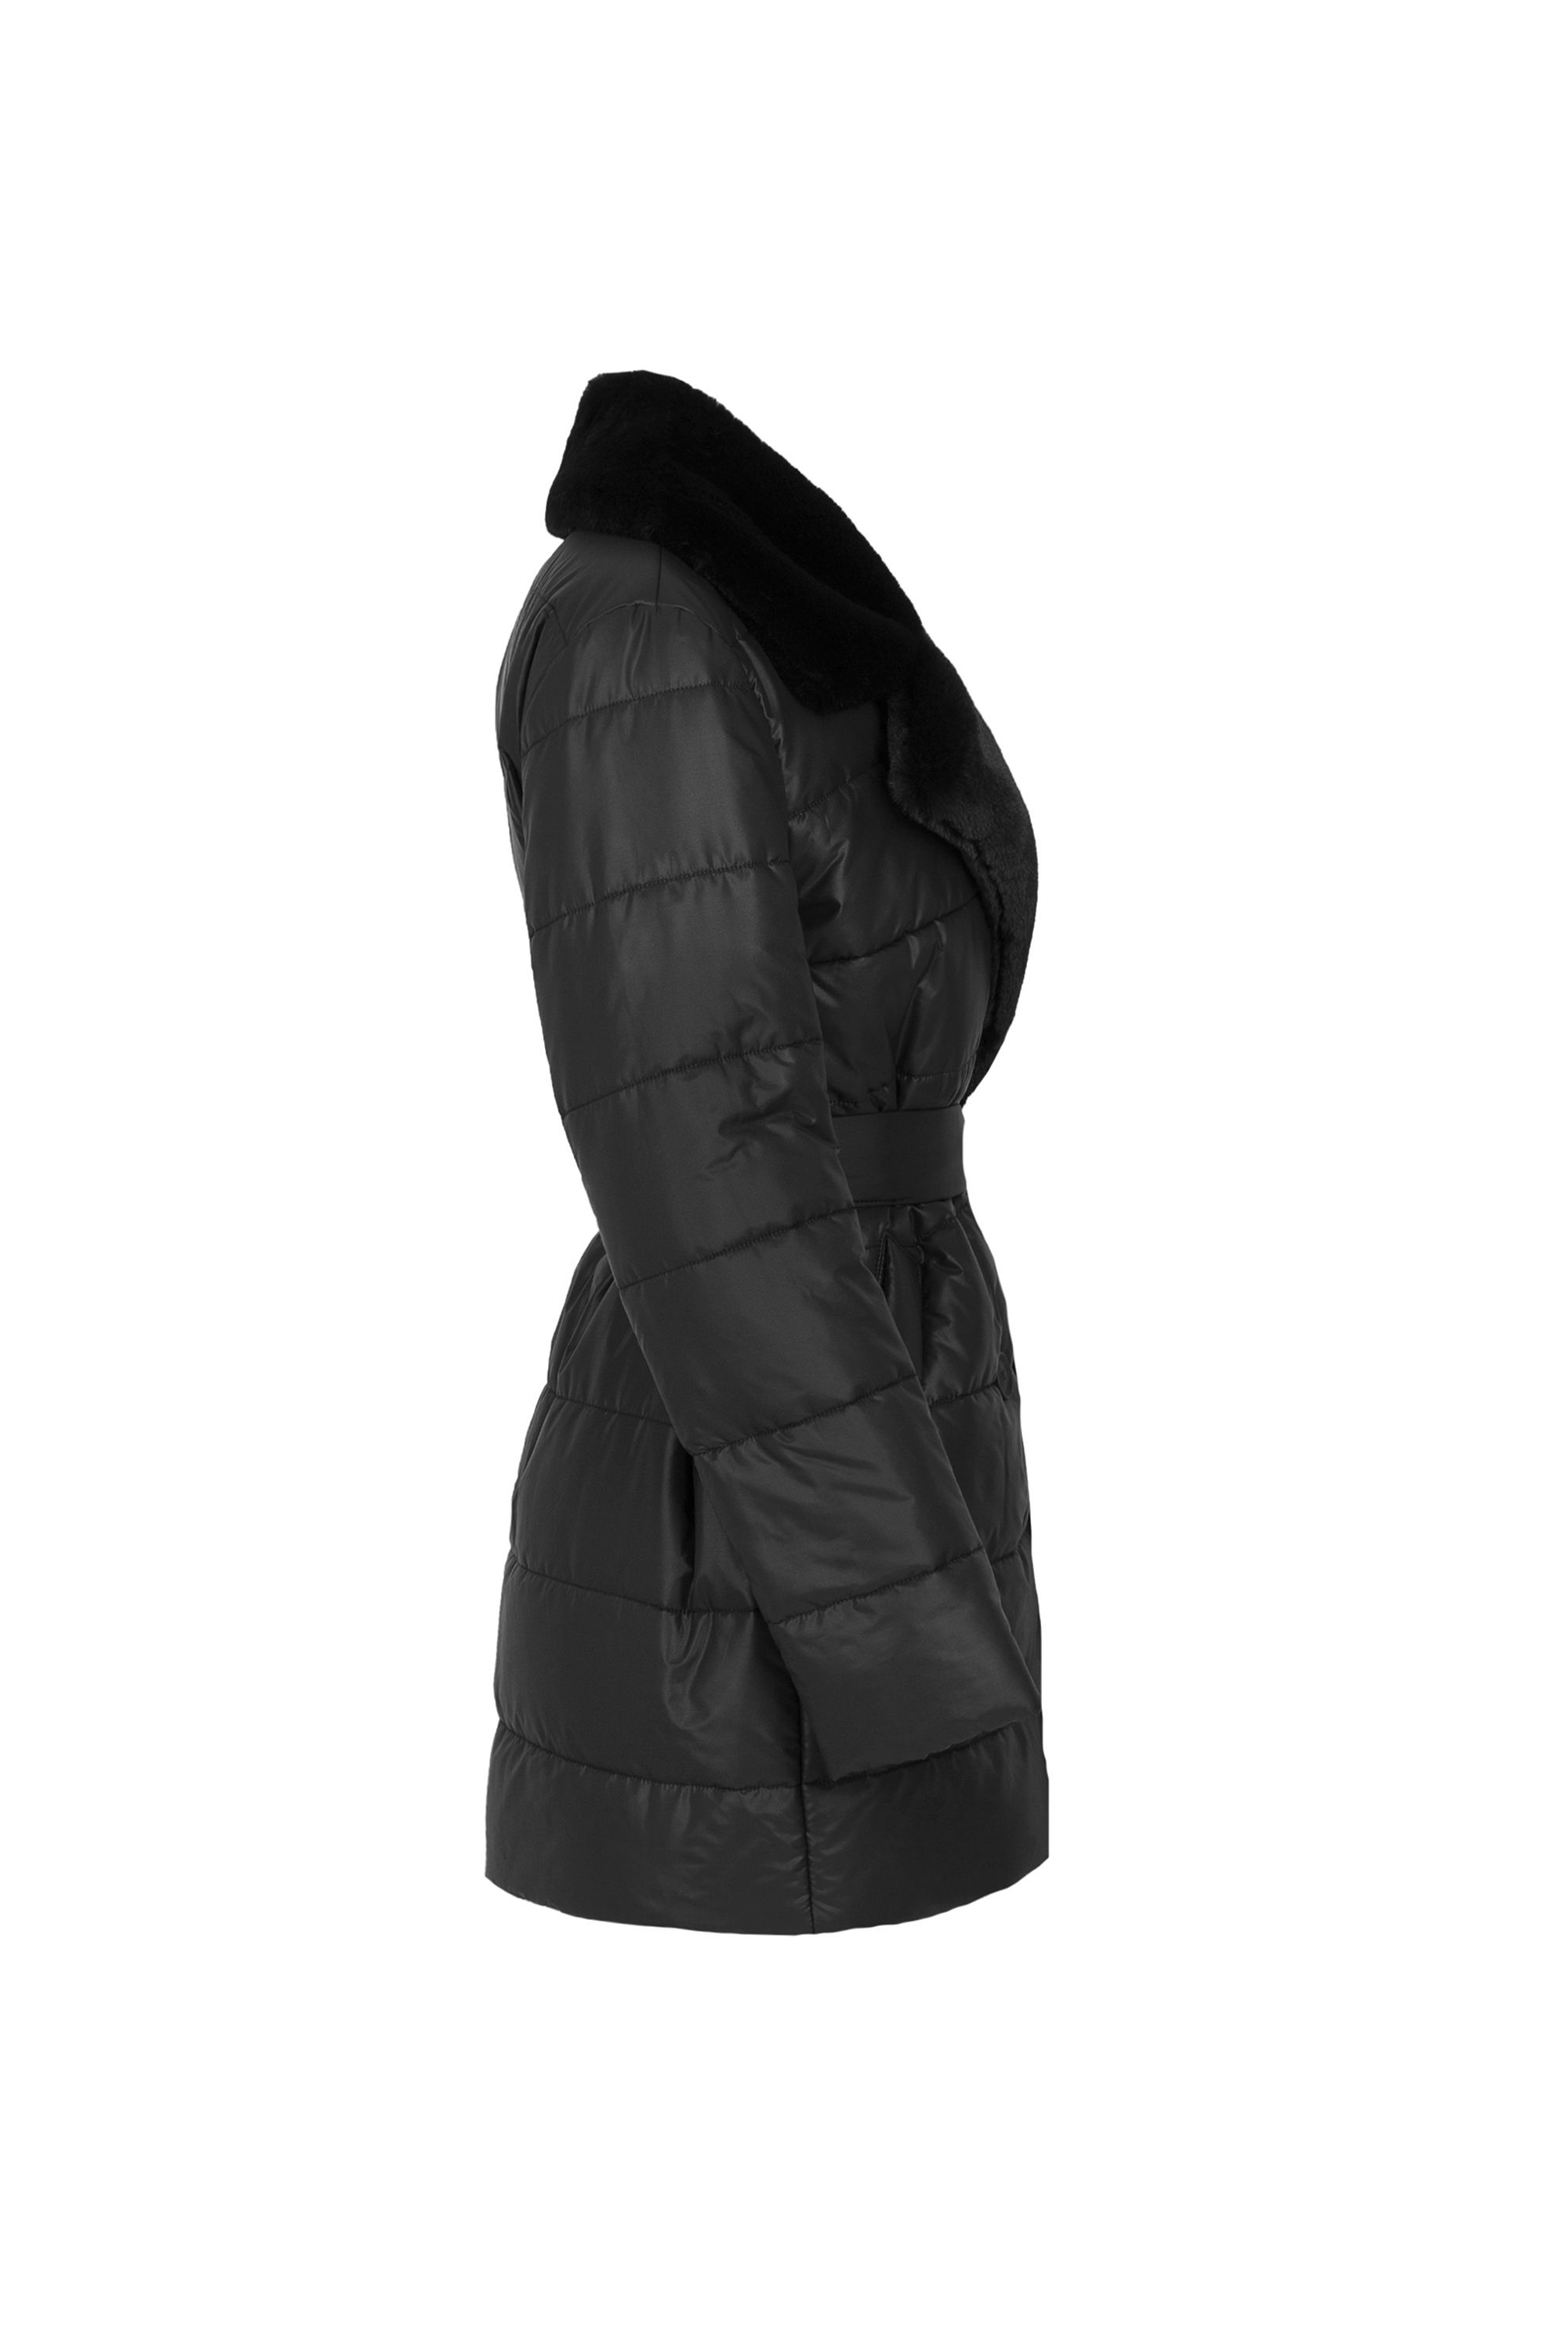 Пальто женское плащевое утепленное 5S-13037-1